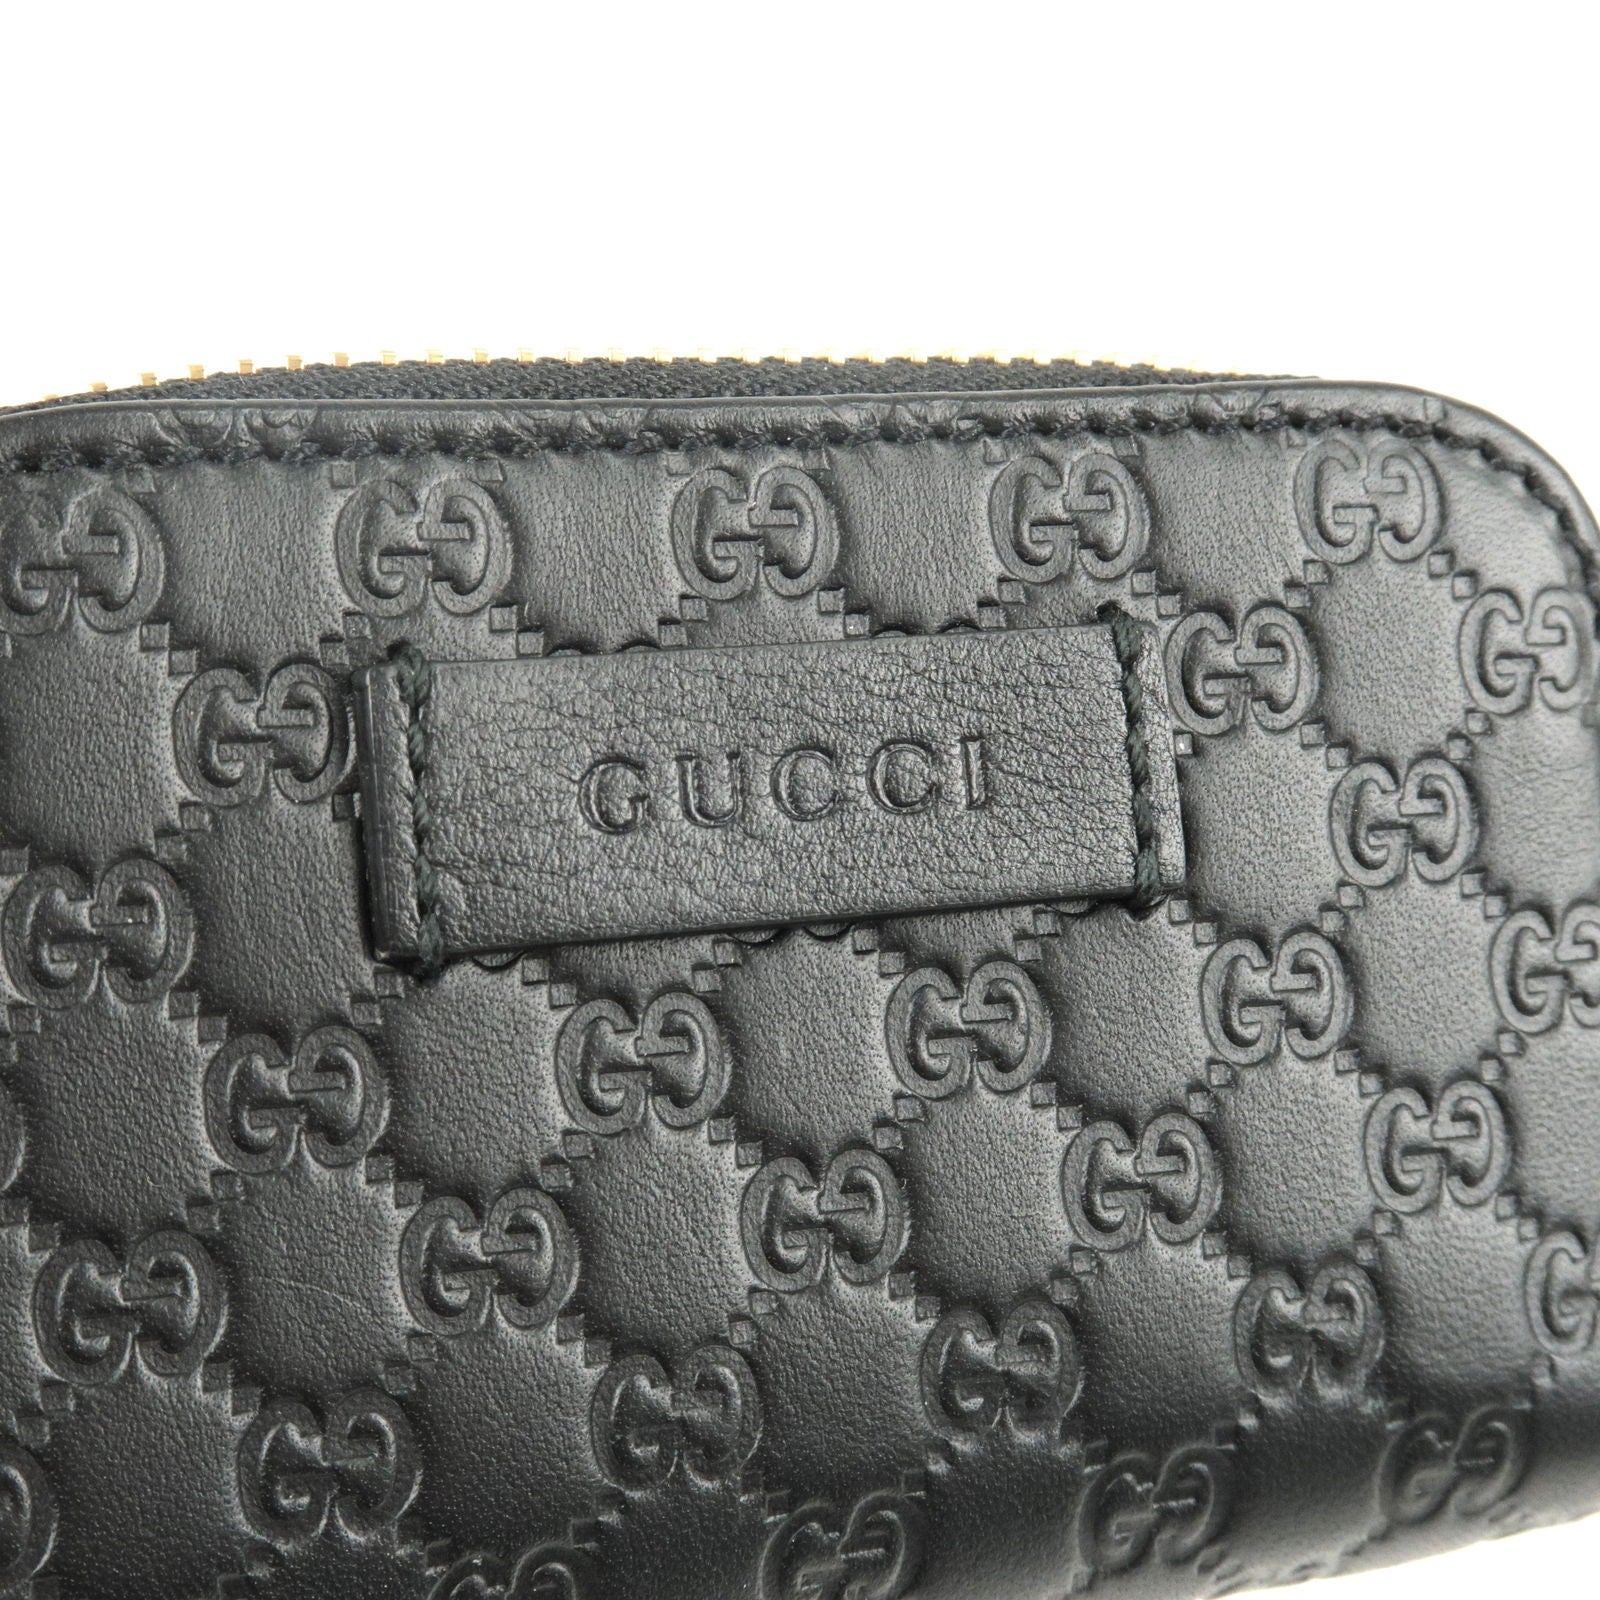 Gucci Microguccissima Key Chain Coin Pouch in Black